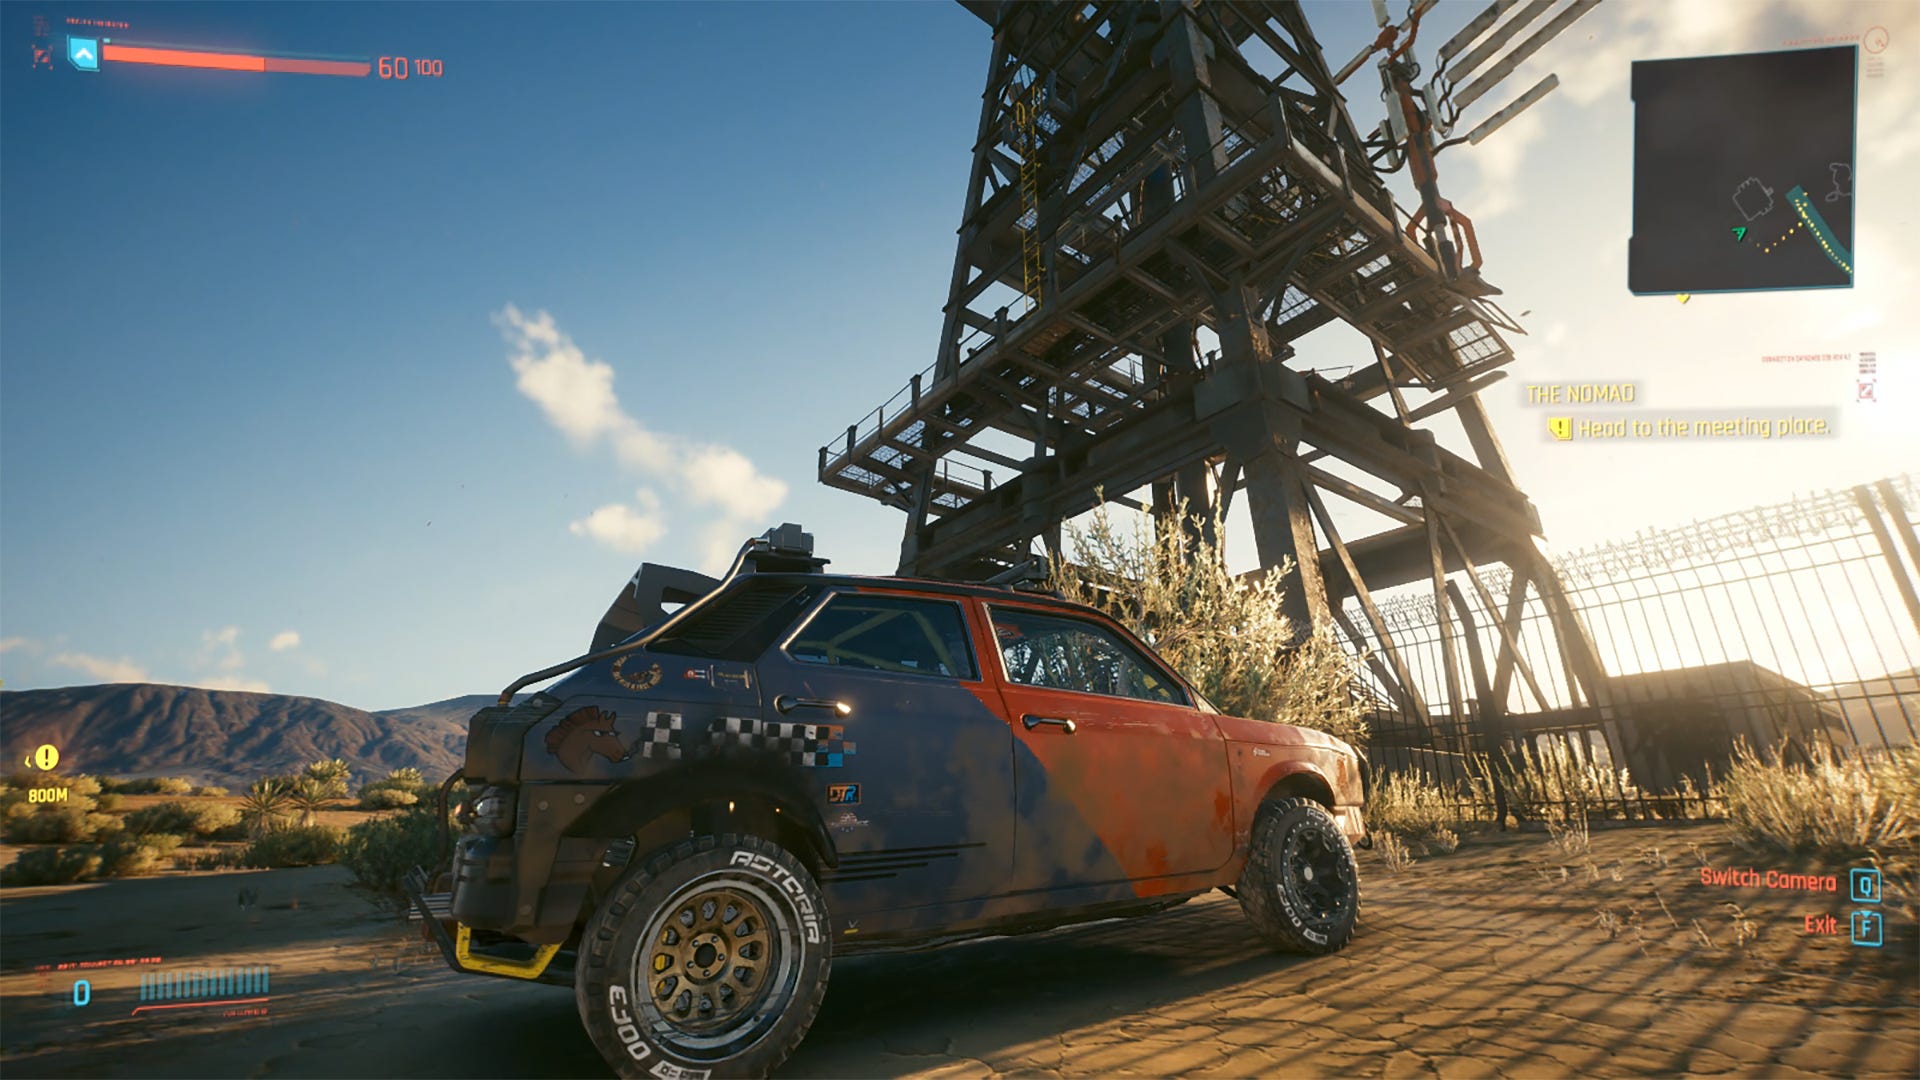 image of a video game car in a desert in "Cyberpunk 2077.".